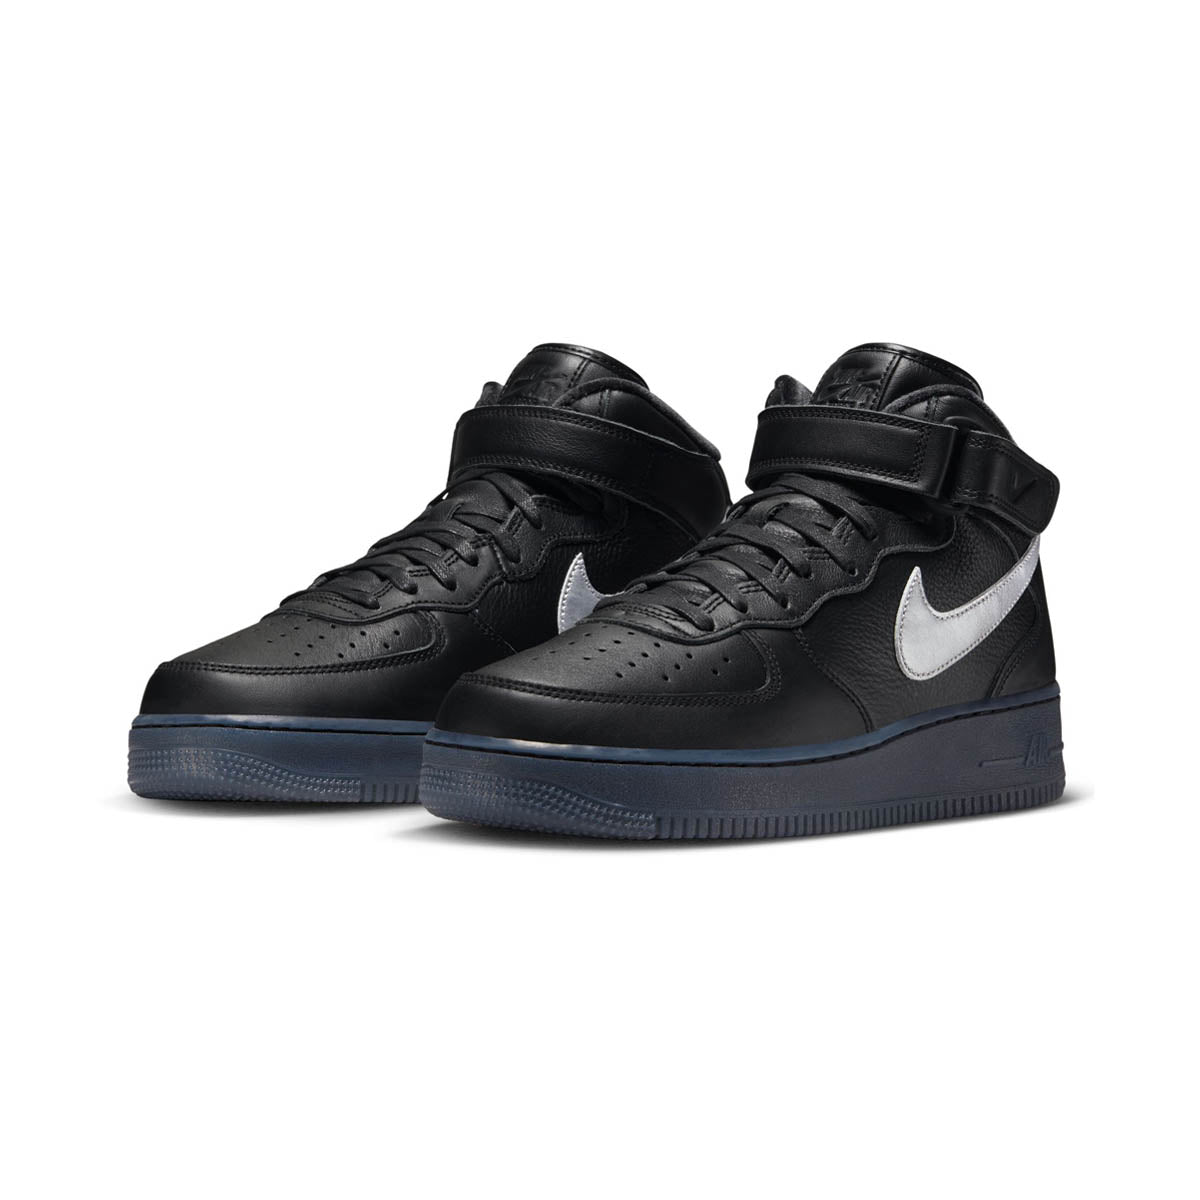 Nike Air Force 1 Mid Premium Black Silver DX3061-001 Men's Size 9 Shoes #23C